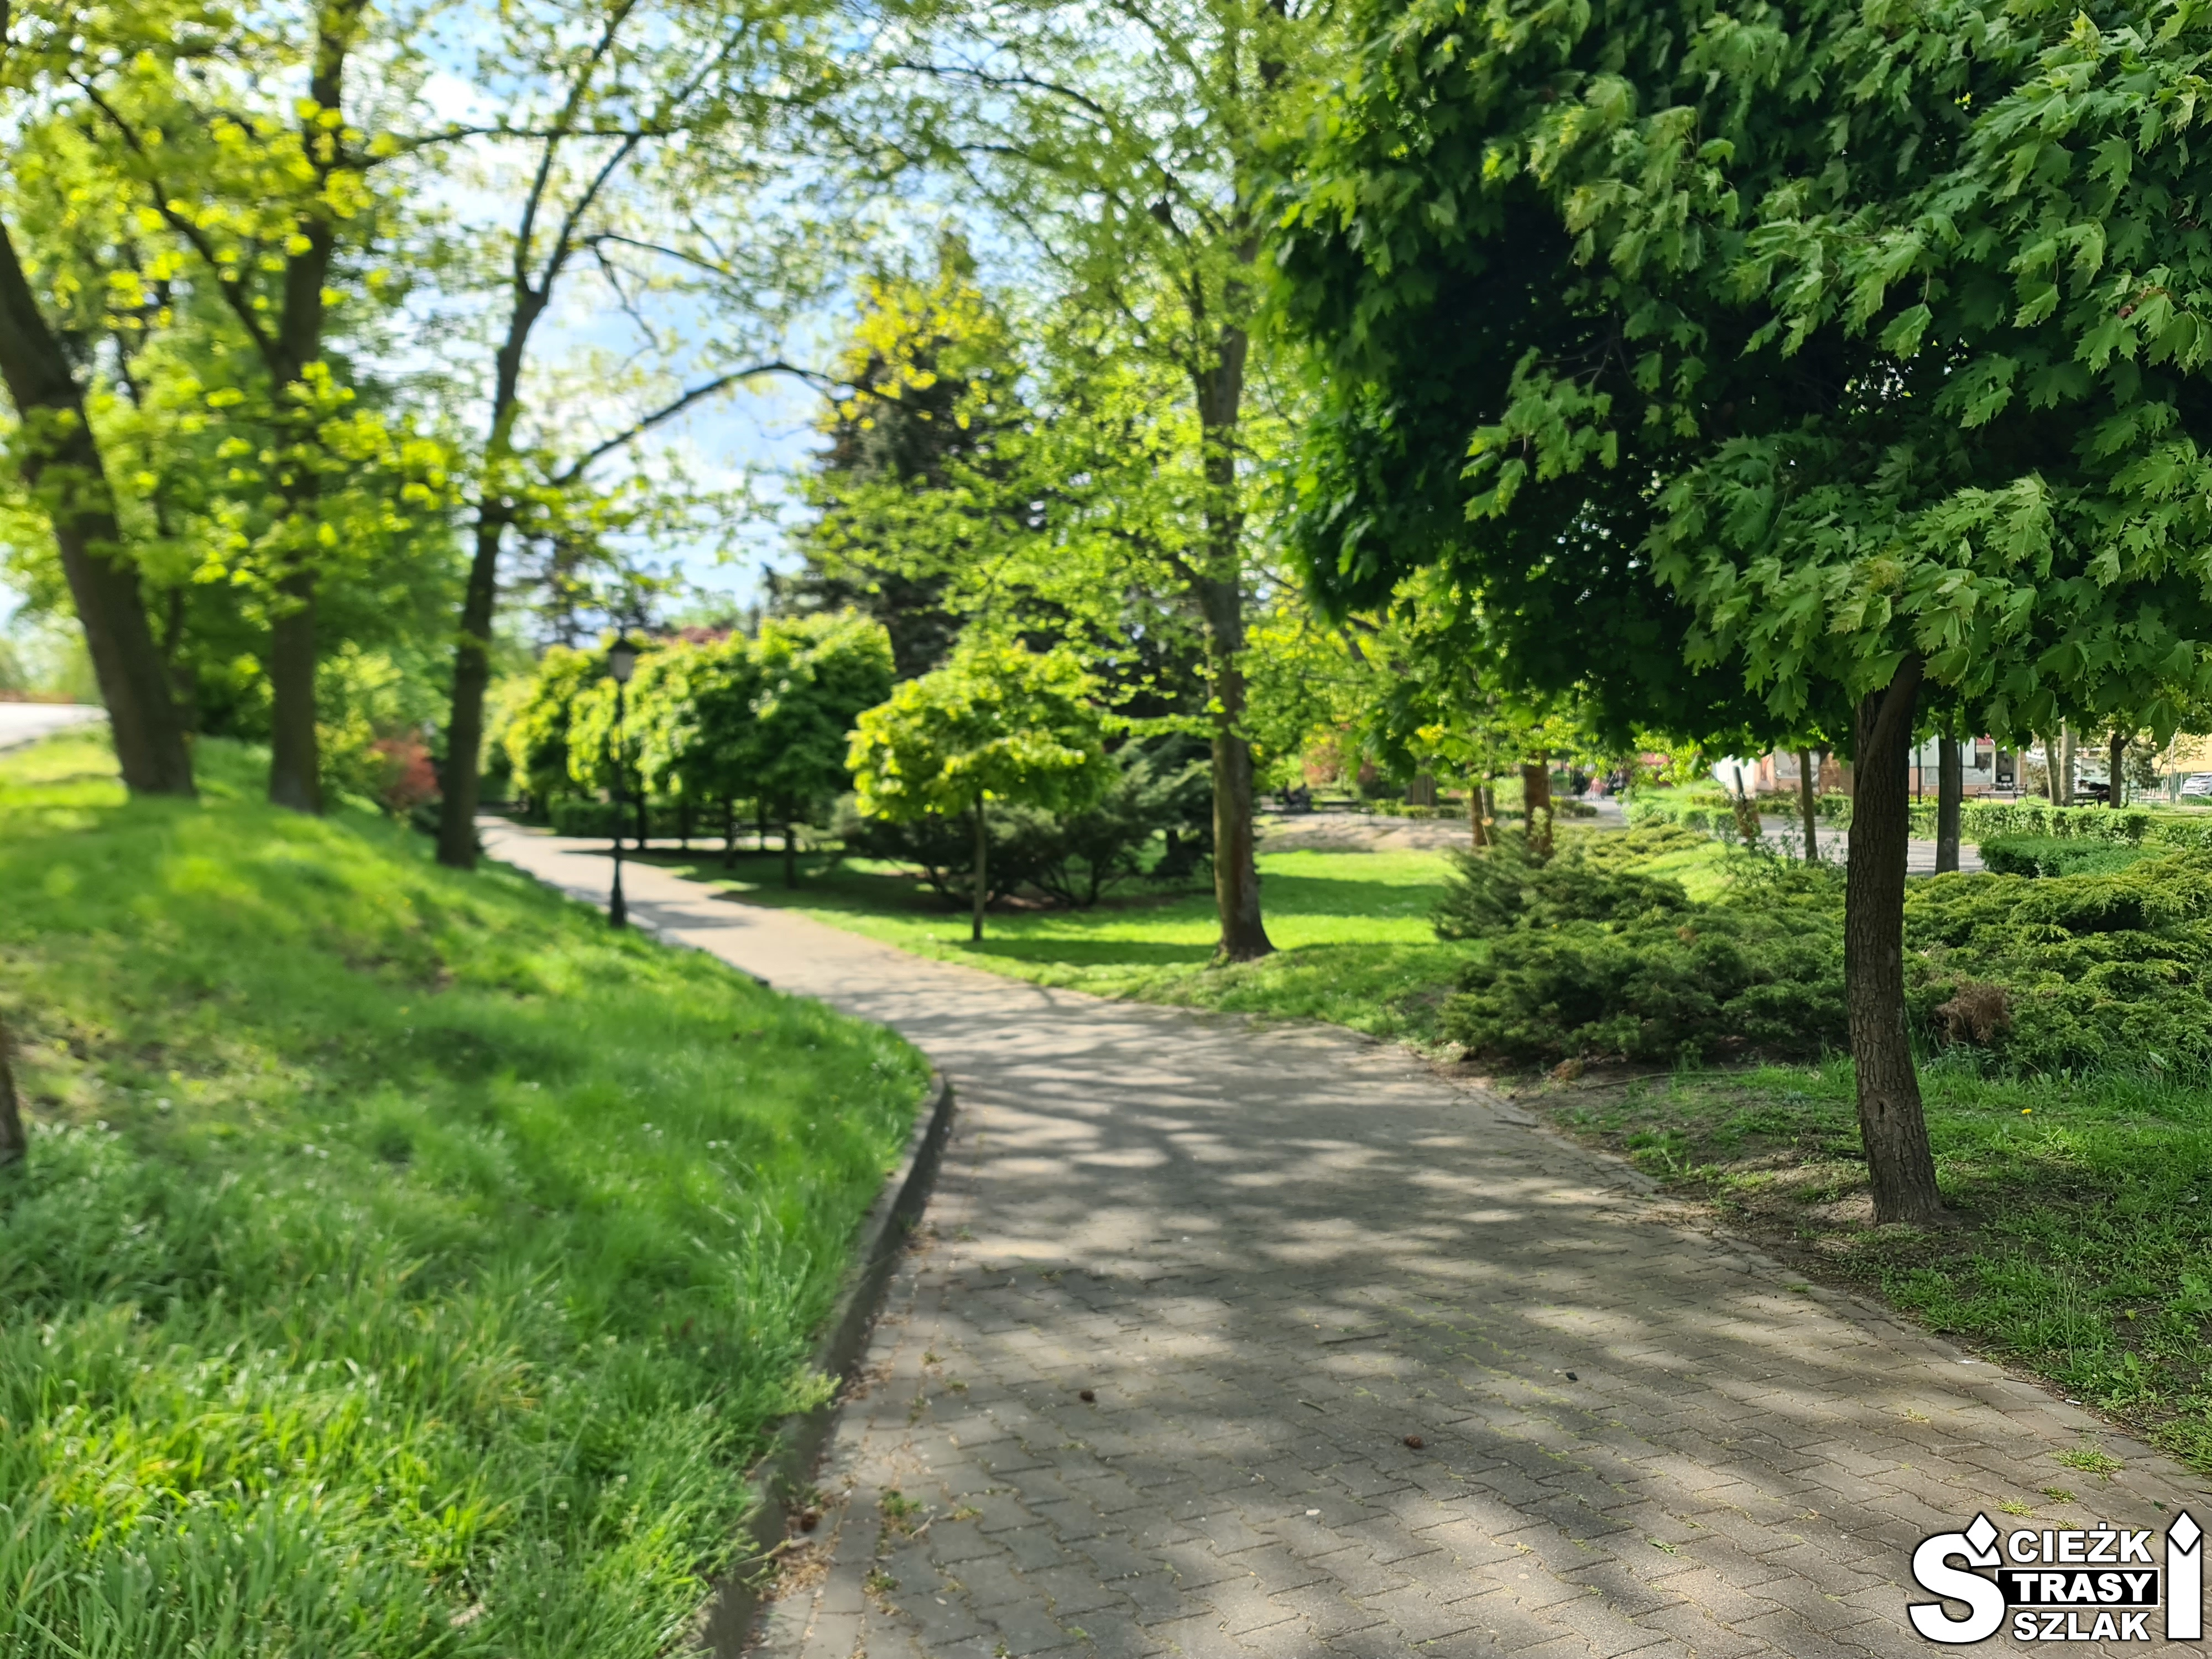 Chodnik biegnący przez park miejski - Chopina w Świebodzinie, otoczony drzewami i krzewami